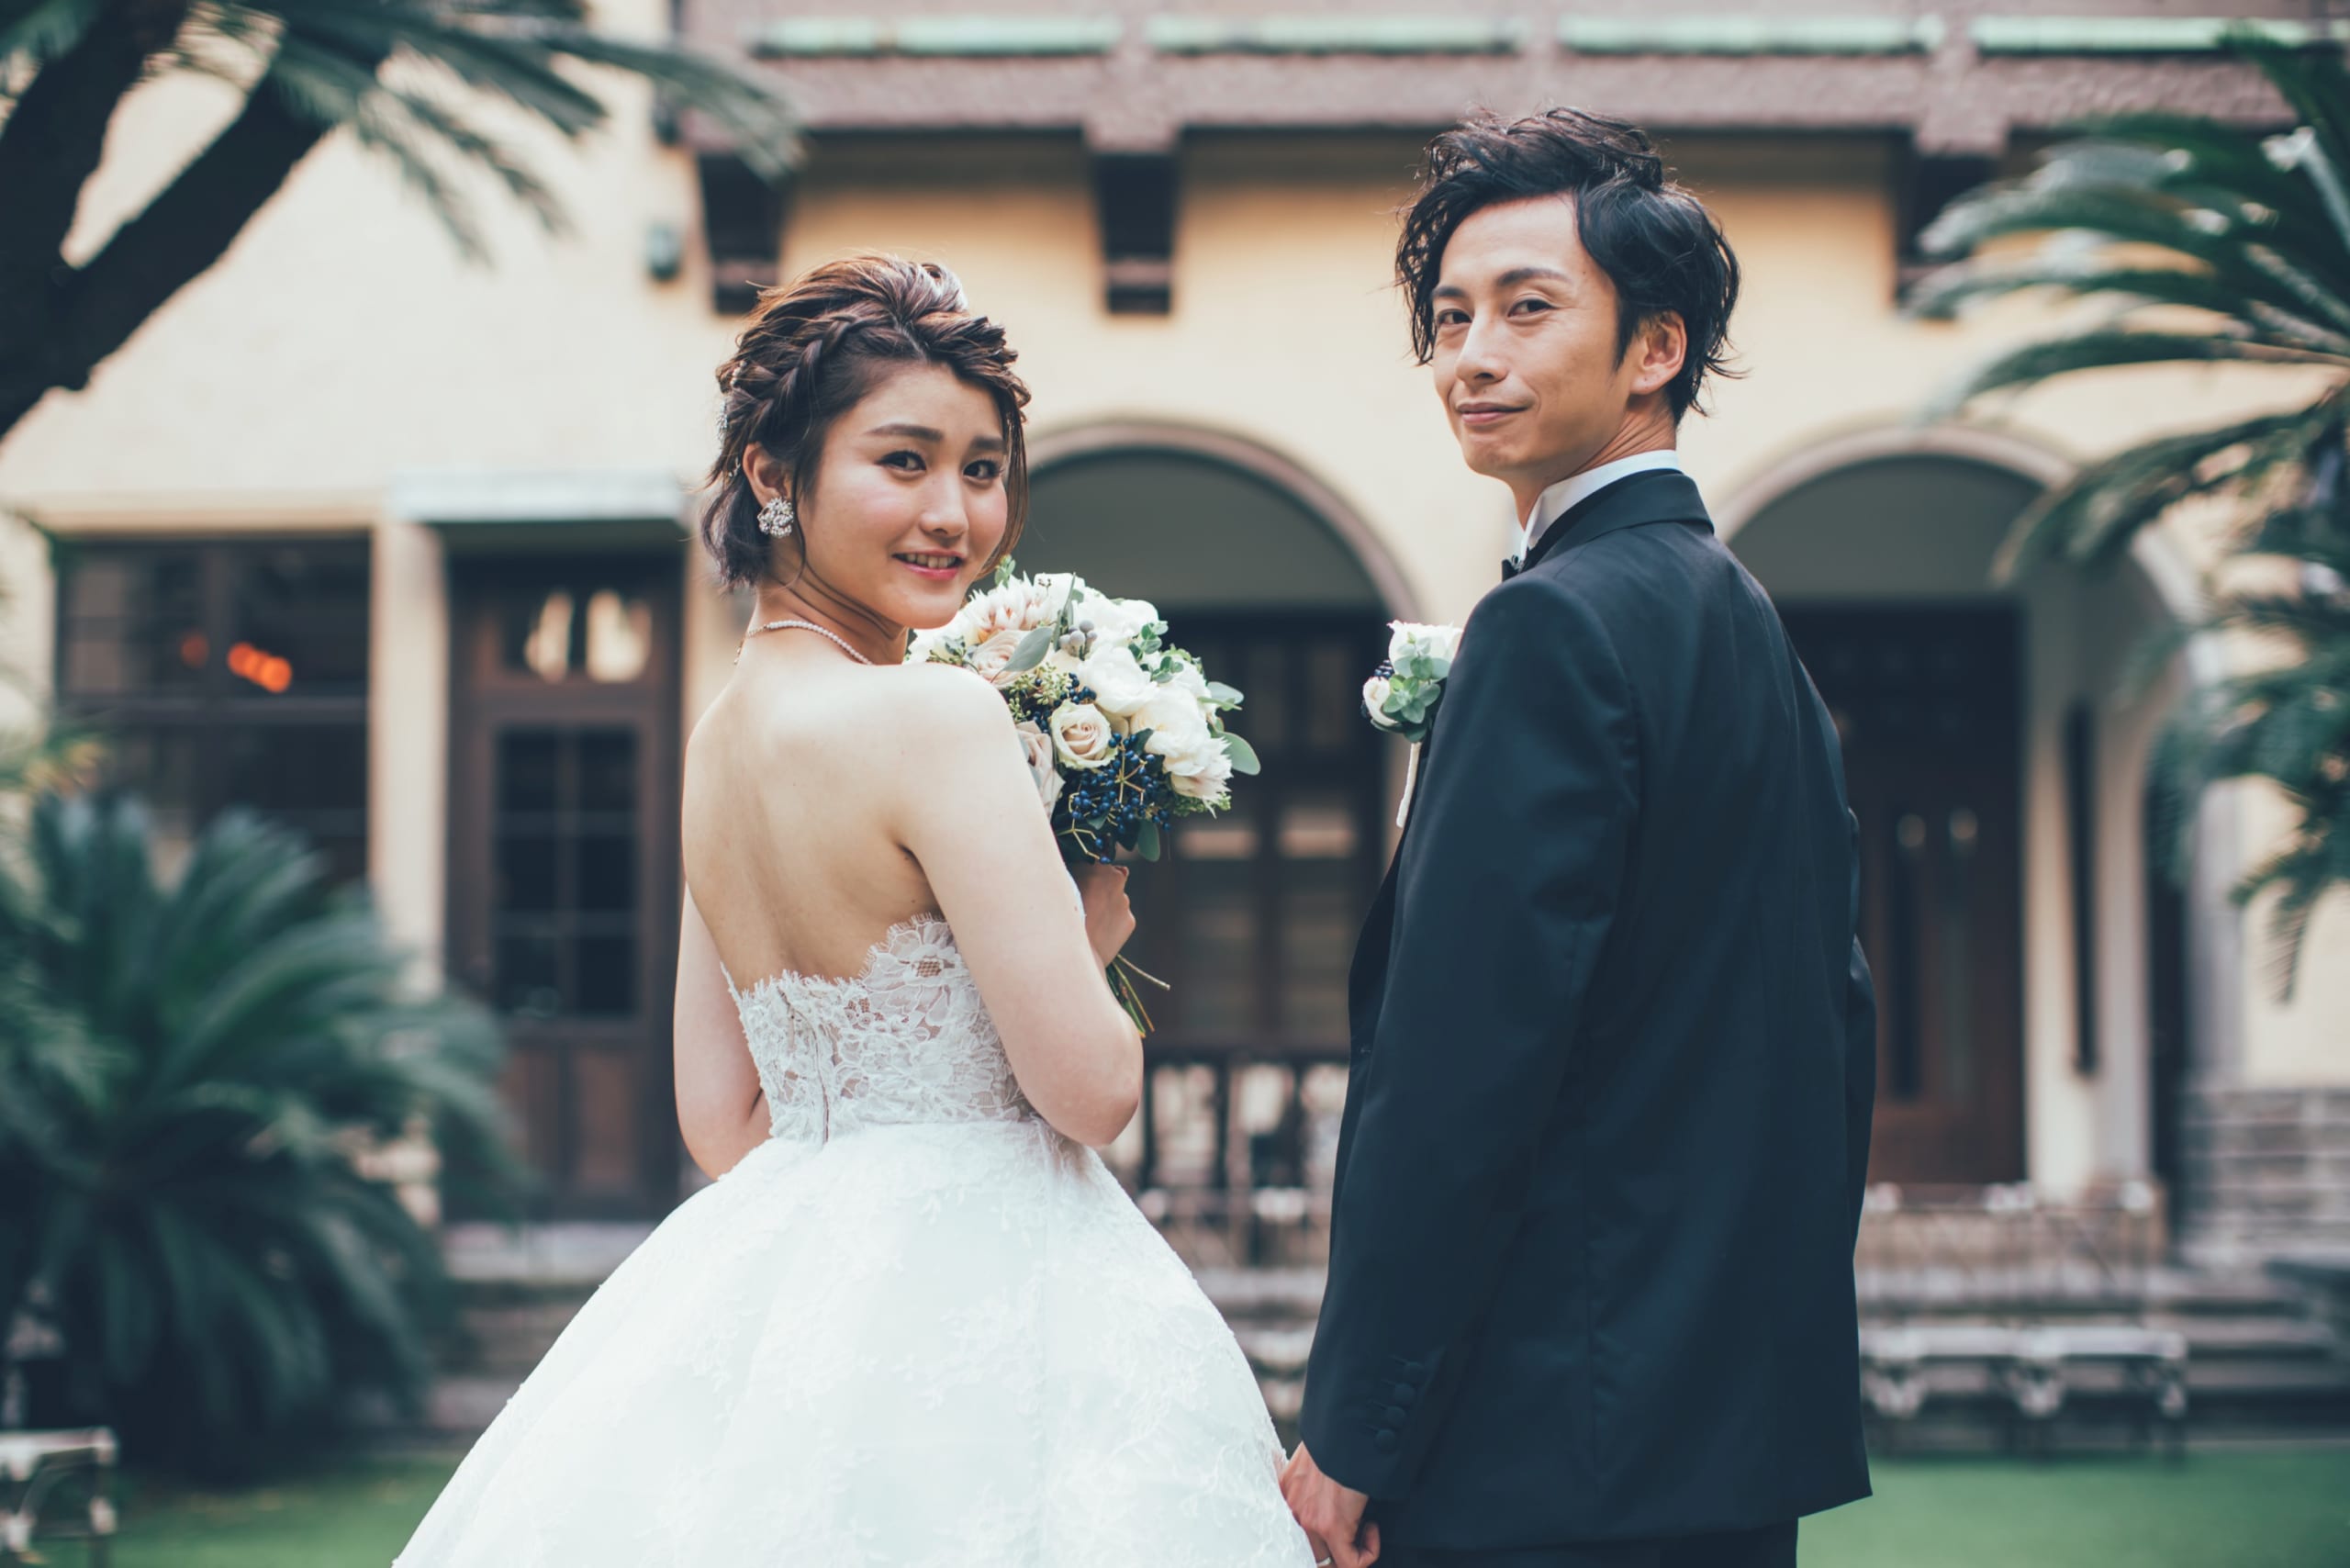 再婚時の結婚マナーは 親への挨拶や結婚の報告などのアレコレ 22年版 口コミ 評判の高い大阪 神戸のオリジナル結婚式 ウェディングプロデュース3社